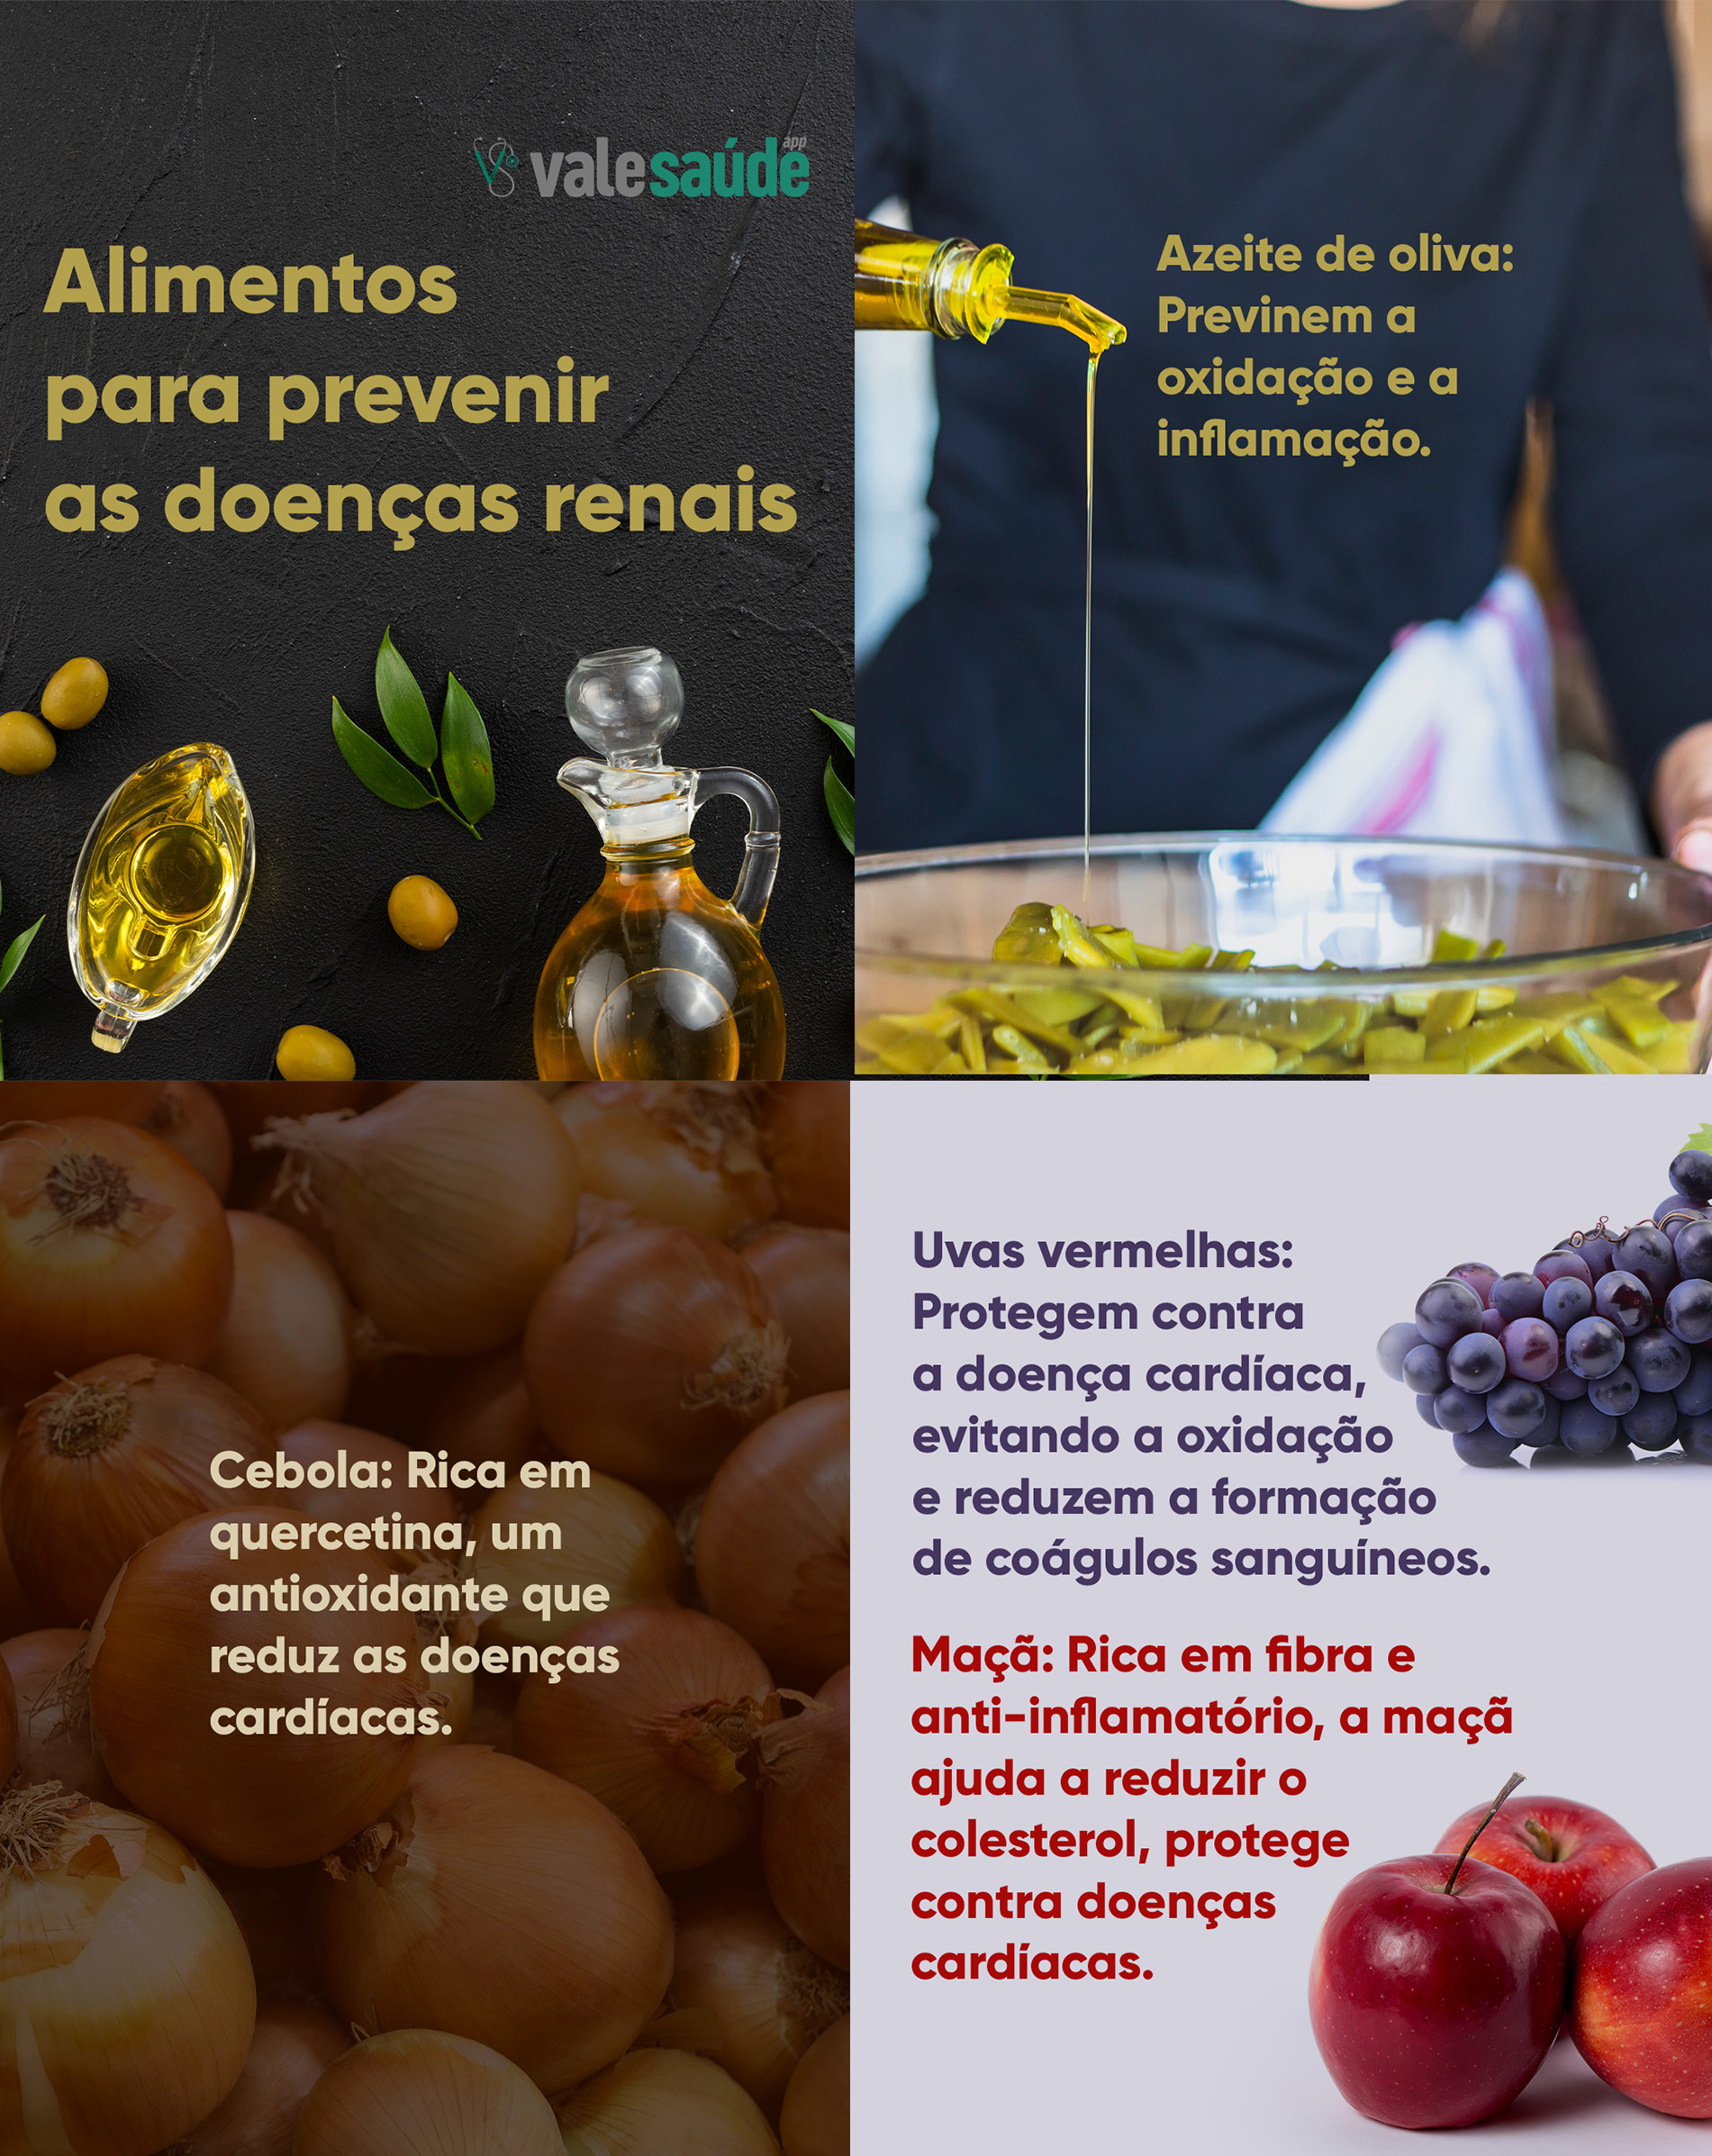 Alimentos para prevenir as doenças renais